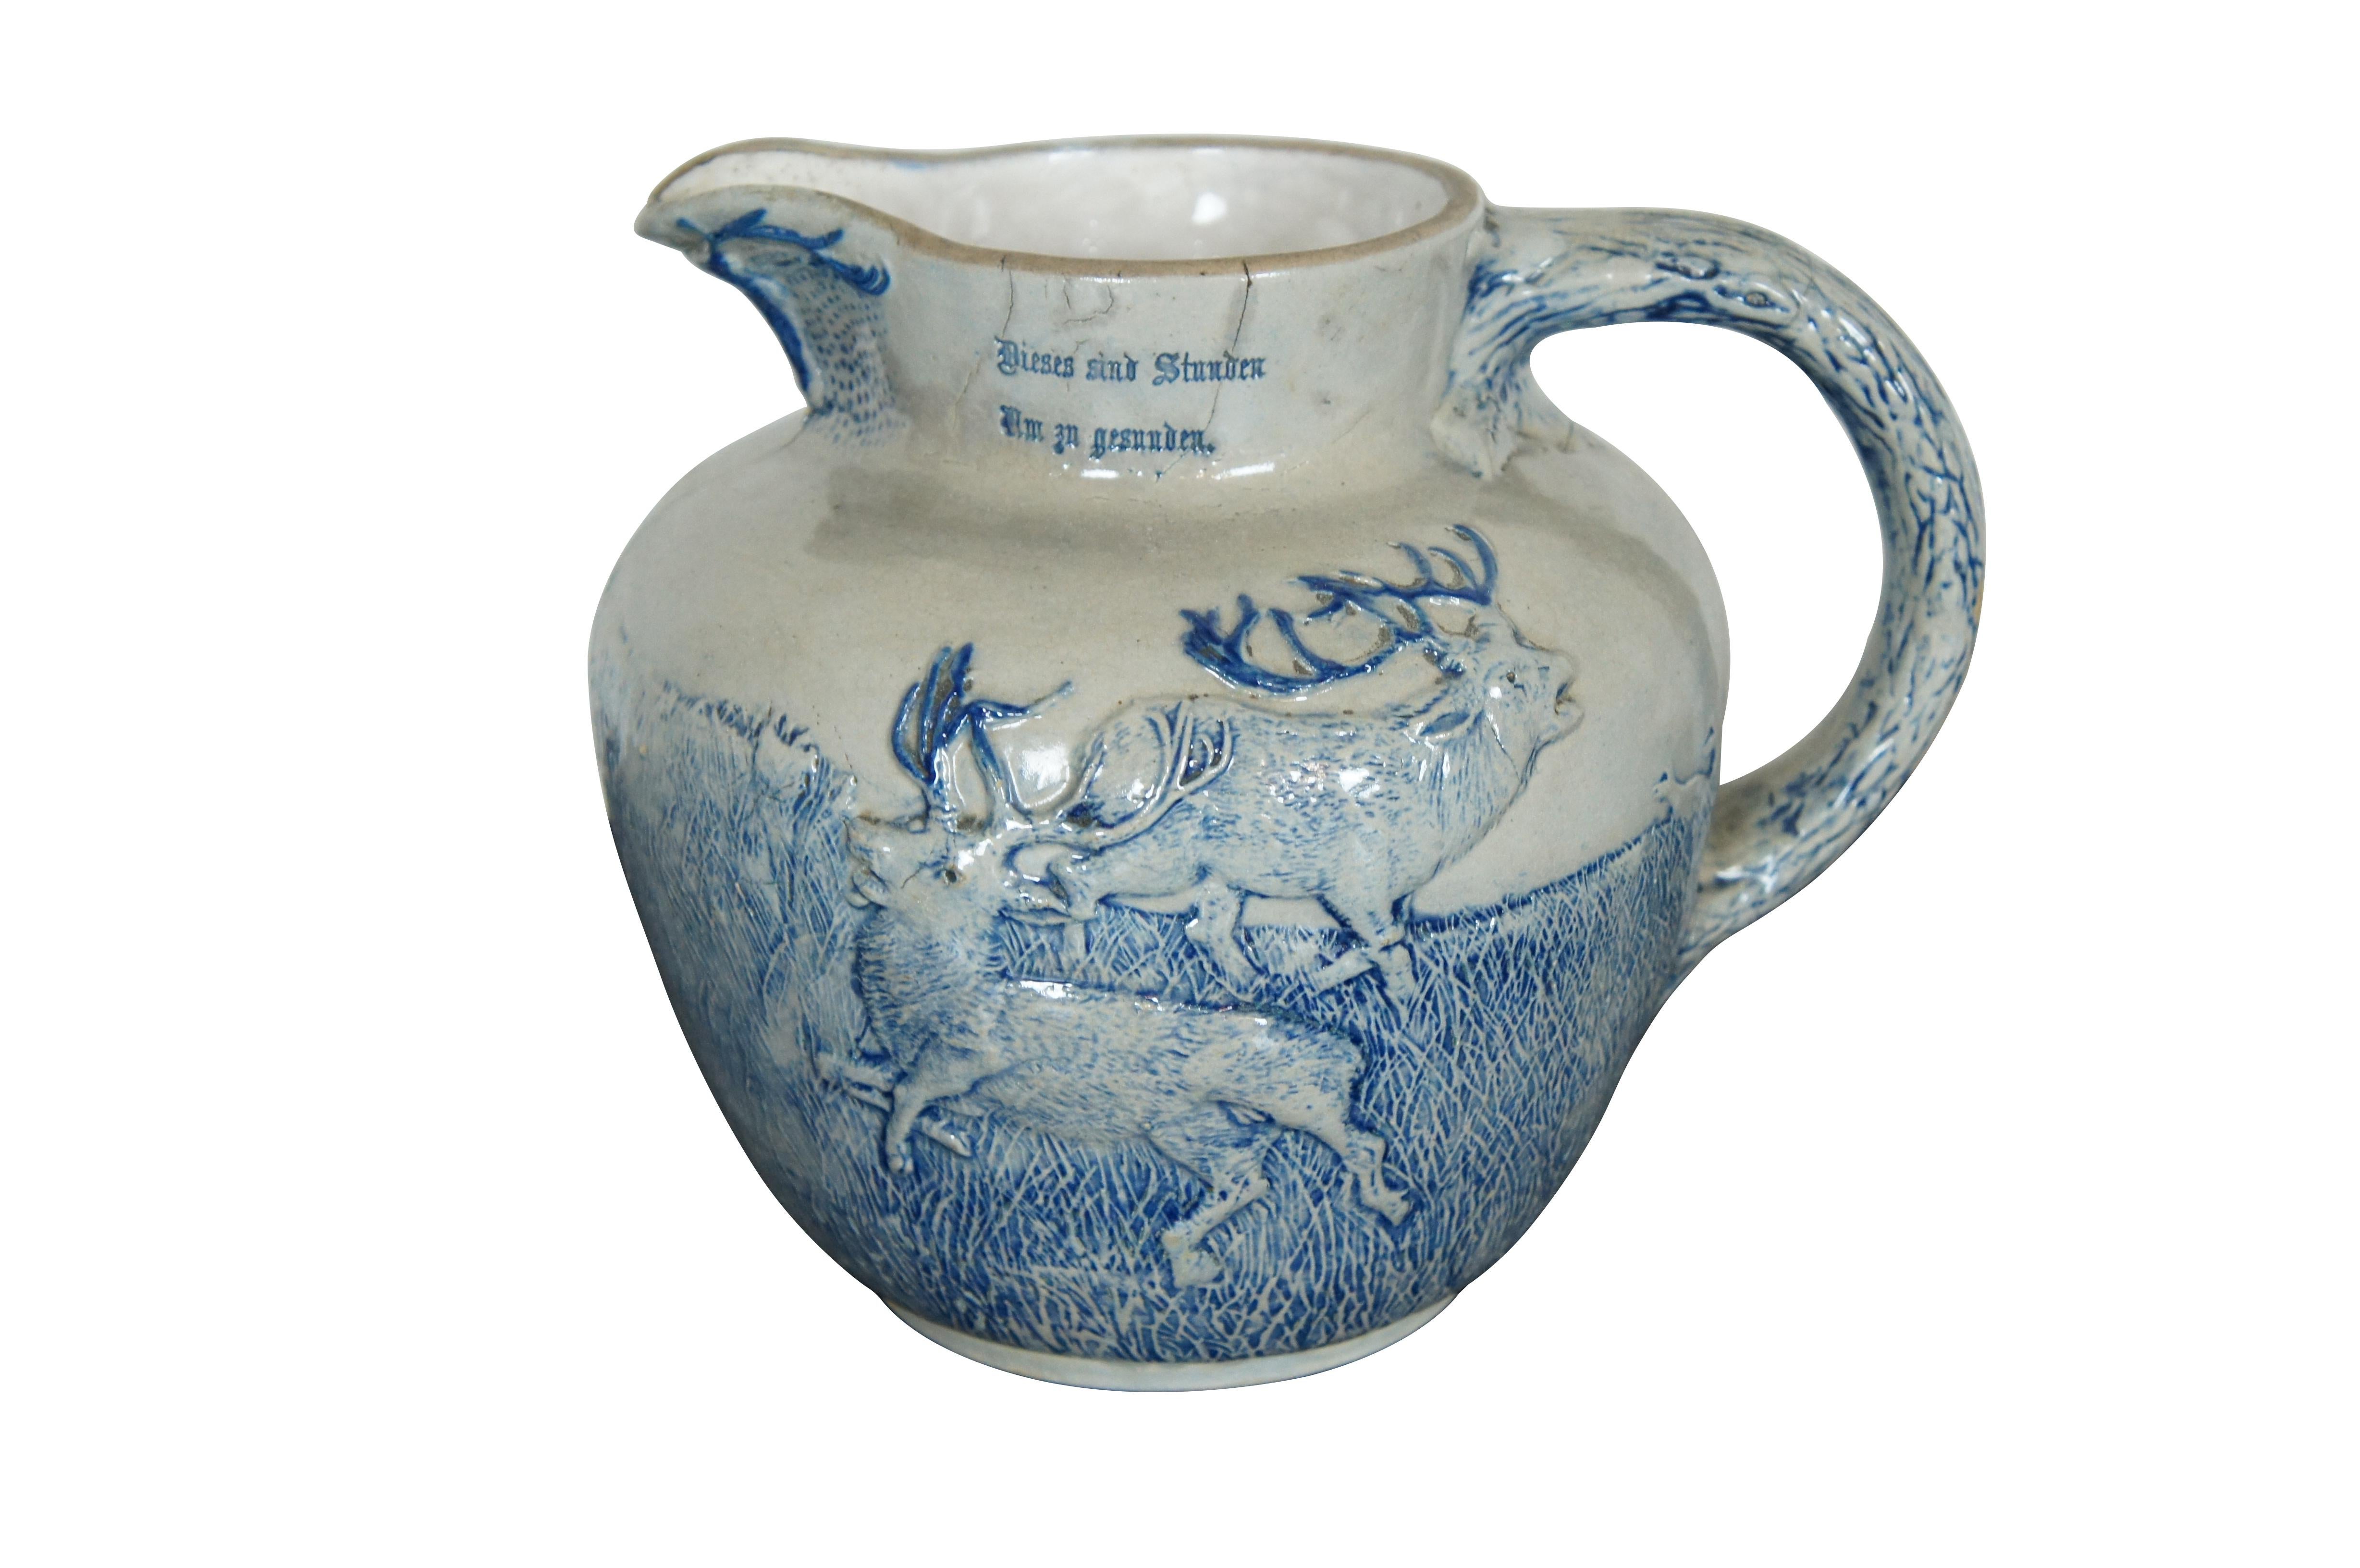 An antique White Utica Salt Glaze pitcher with German Hunt Scene.  Text reads: Dieses sind Stunden Am zn gesuuden. / Mit dem Liebchen vereient Brim rollem Becher. Translation 